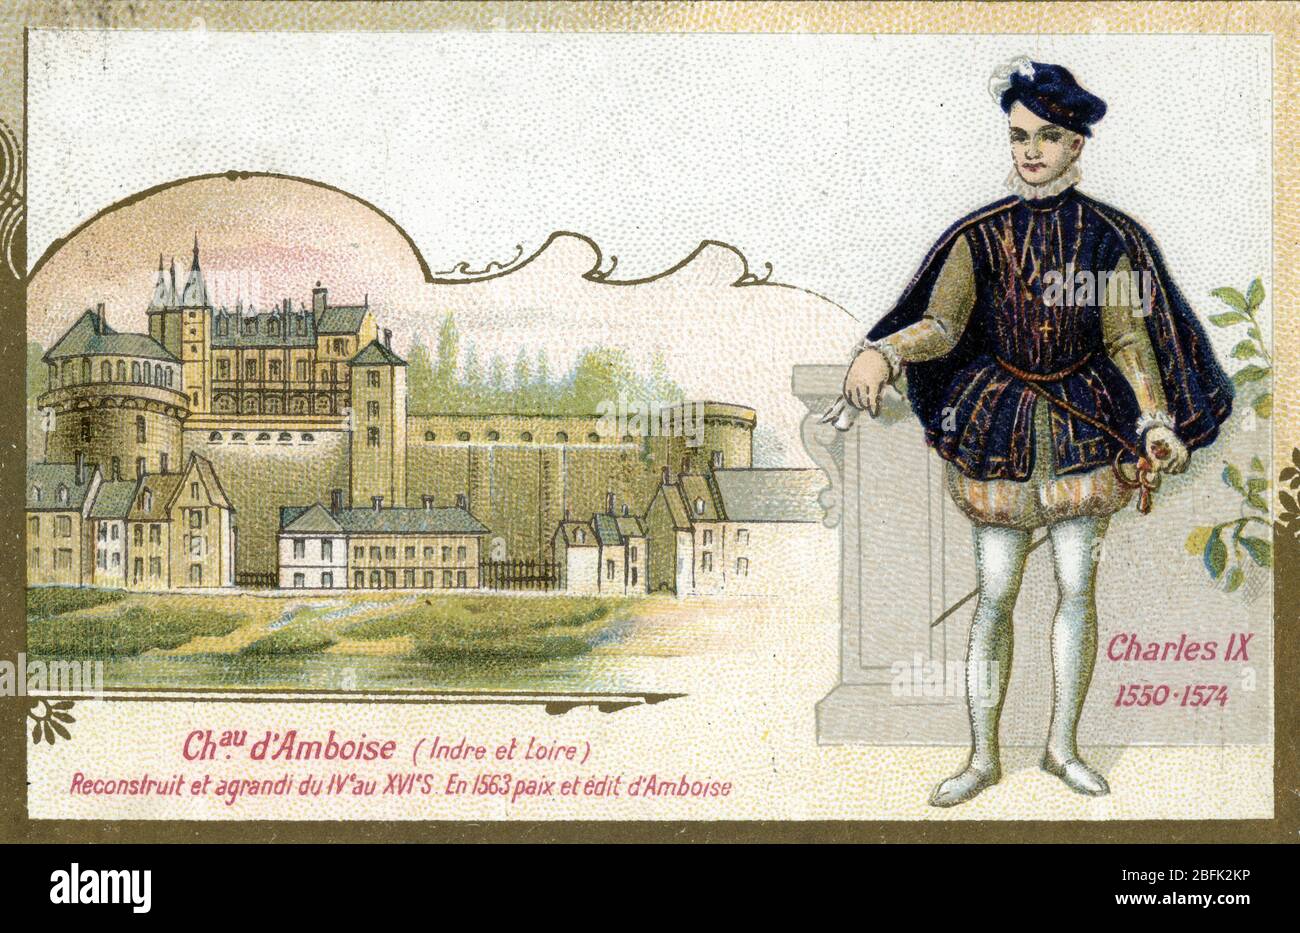 Portrait de Charles IX (1550-1574) au Chateau d'Amboise en Indre et Loire ou eut lieu en 1563 la paix et l'edit d'Amboise (Ritratto di re Carlo IX Foto Stock